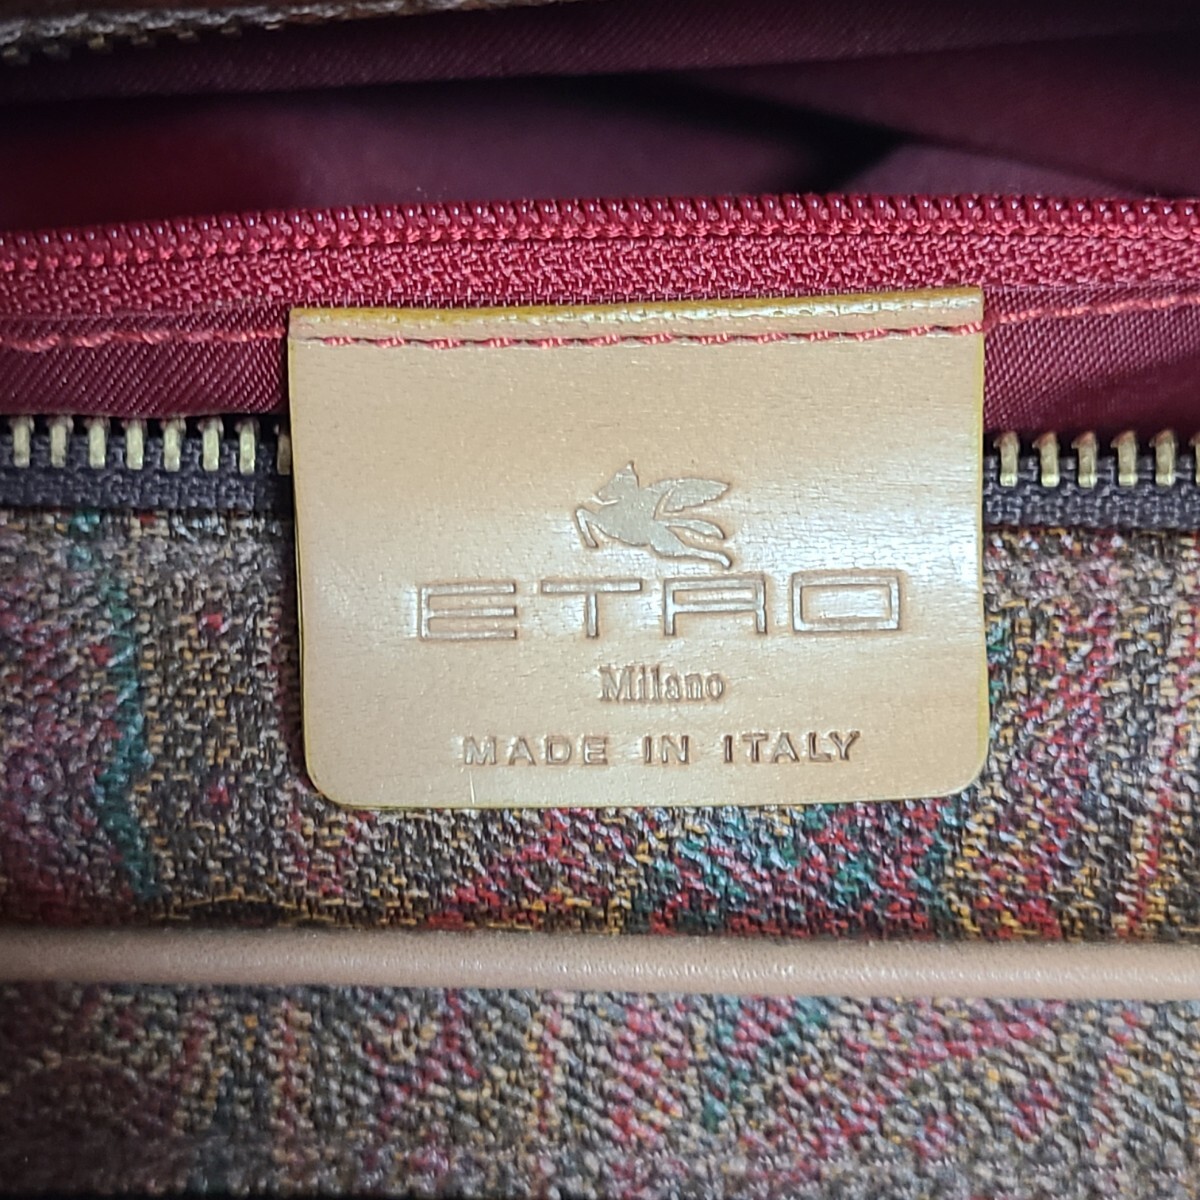 CbA13LL イタリア製 ETRO エトロ MIRANO ショルダーバッグ 肩掛けバッグ 斜め掛けバッグ レザー 革バッグ 総柄 ペイズリー ブラウン系